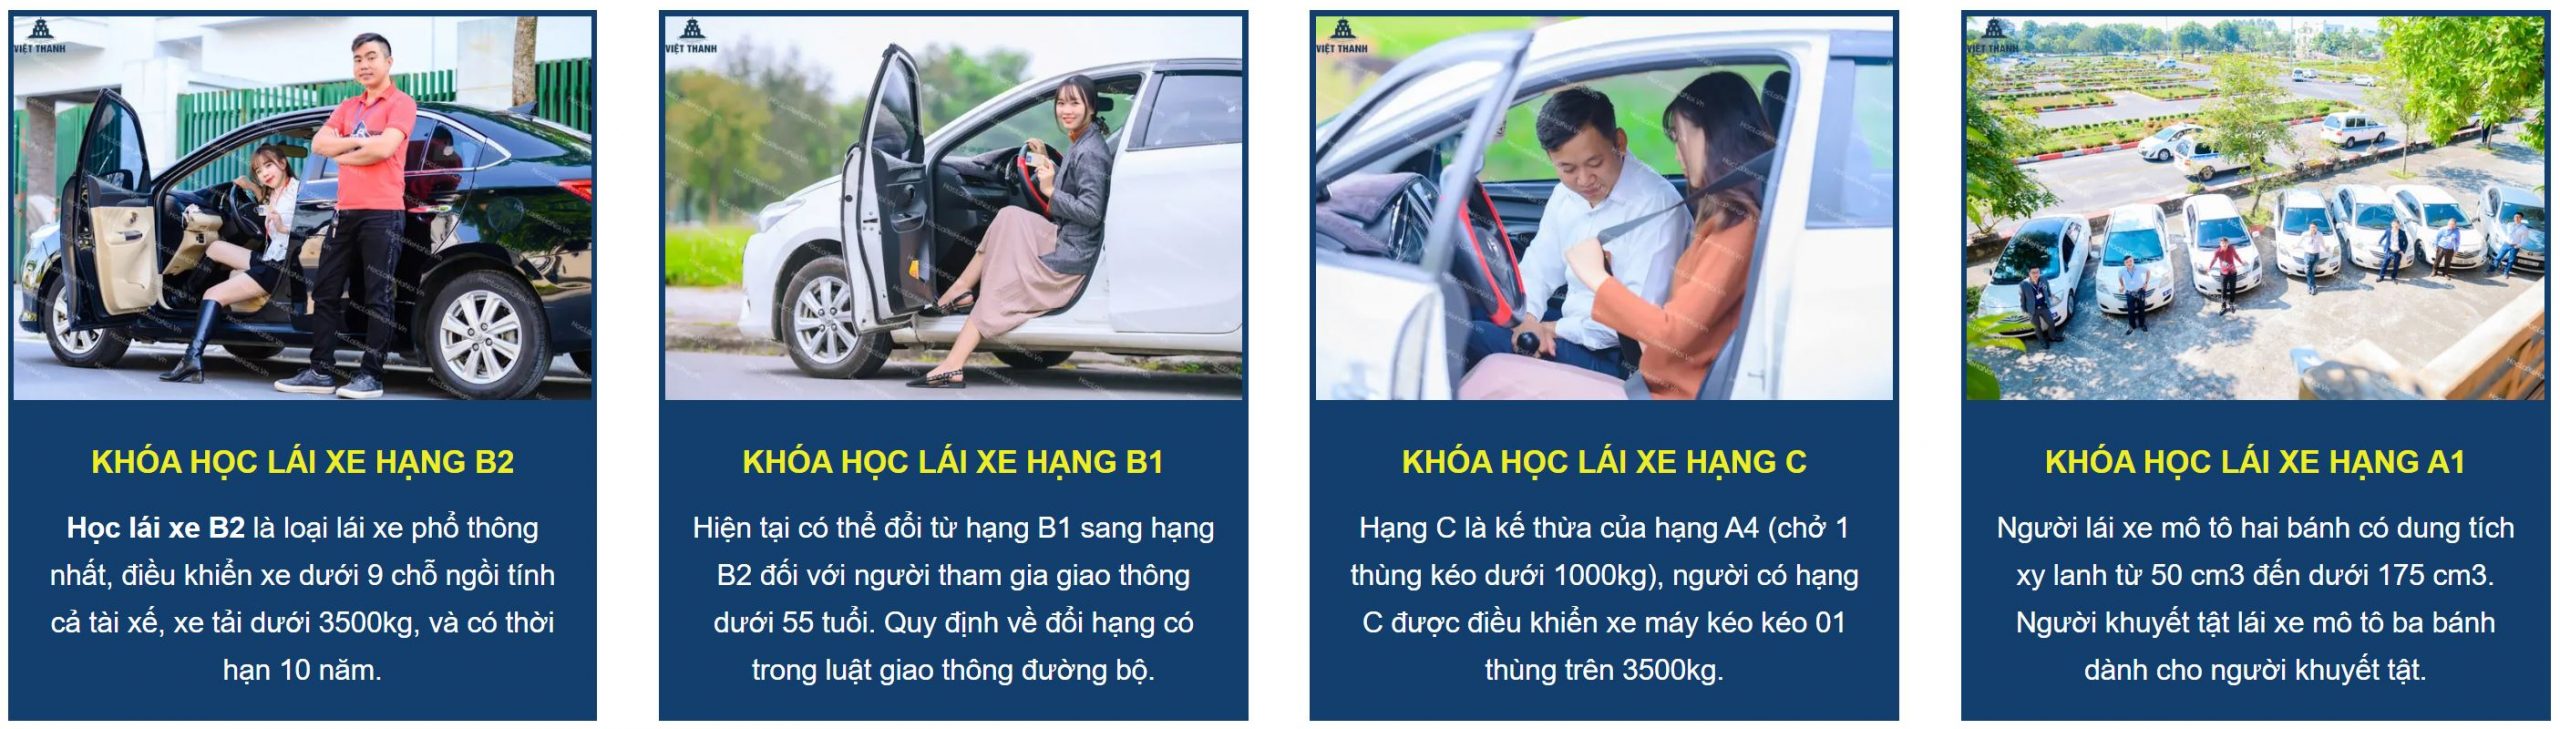 Trung tam sat hach Lai xe o to Viet Uc Ha Nam 1 scaled - Top 3 trung tâm sát hạch lái xe tại Hà Nam uy tín nhất